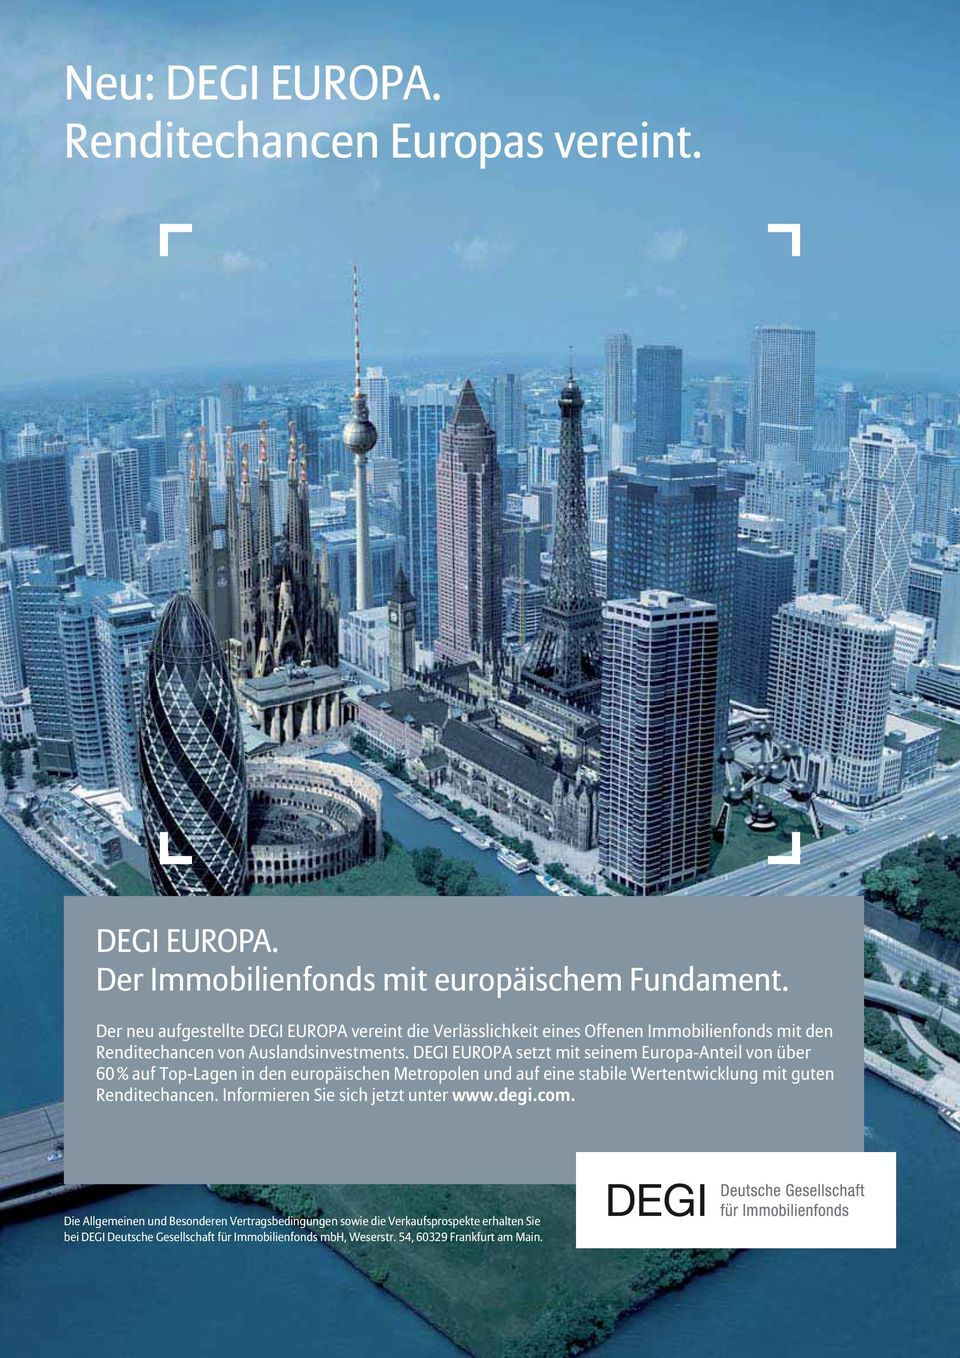 DEGI EUROPA setzt mit seinem Europa-Anteil von über 60 % auf Top-Lagen in den europäischen Metropolen und auf eine stabile Wertentwicklung mit guten